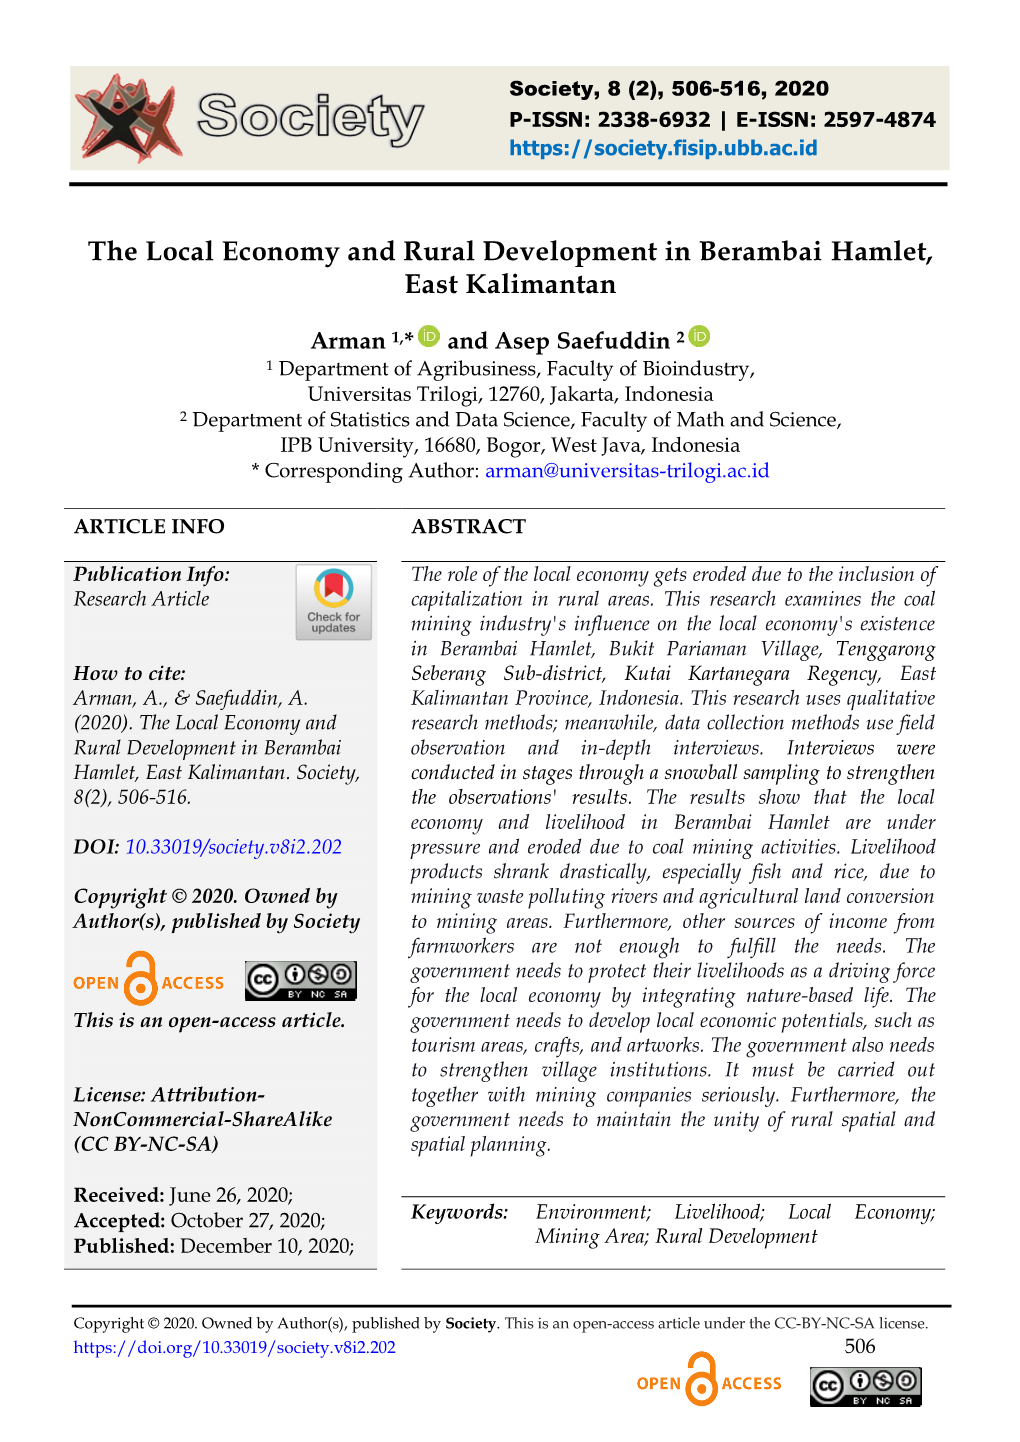 The Local Economy and Rural Development in Berambai Hamlet, East Kalimantan